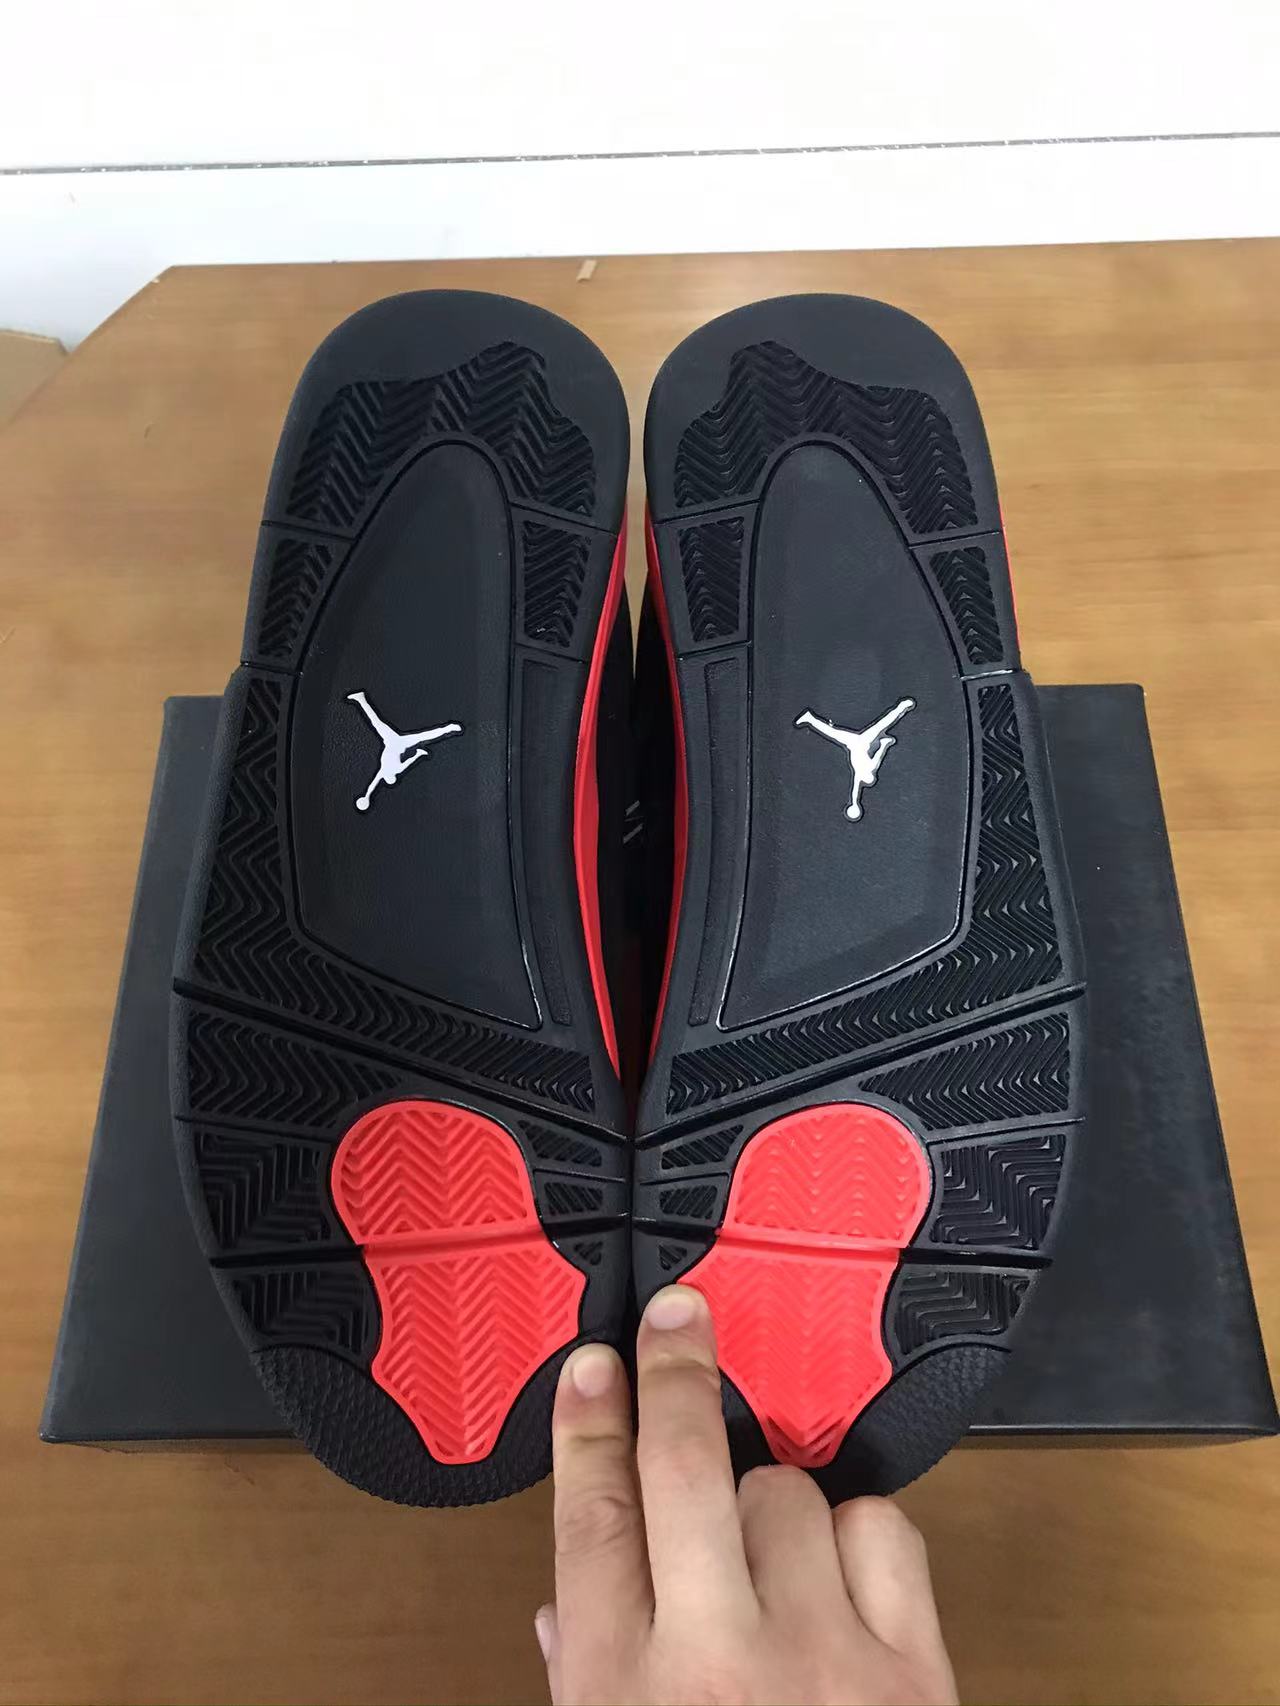 mangomeee,replica jordan 4,best fake sneaker